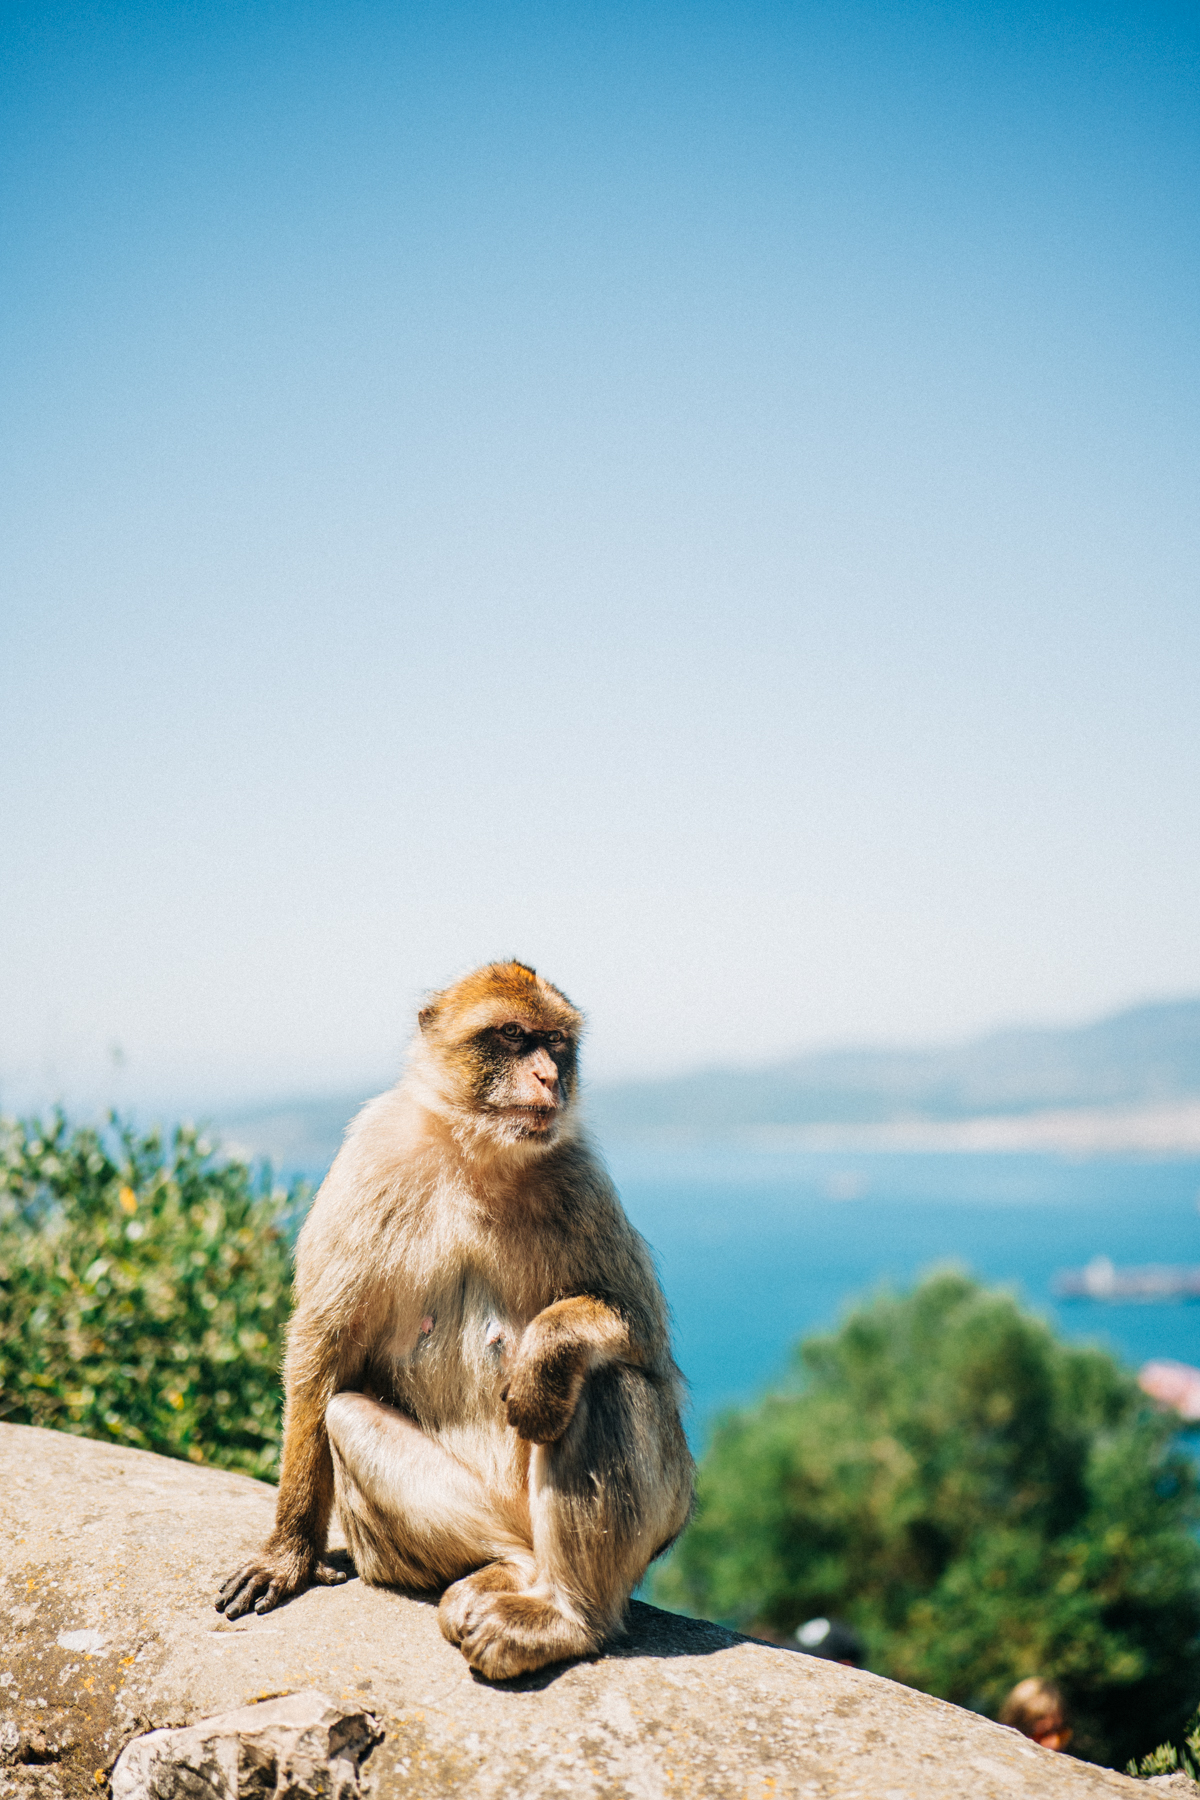 Affenfelsen Fels von Gibraltar Bilder 25 - In Gibraltar sind die Affen los: Zu Besuch auf dem Affenfelsen